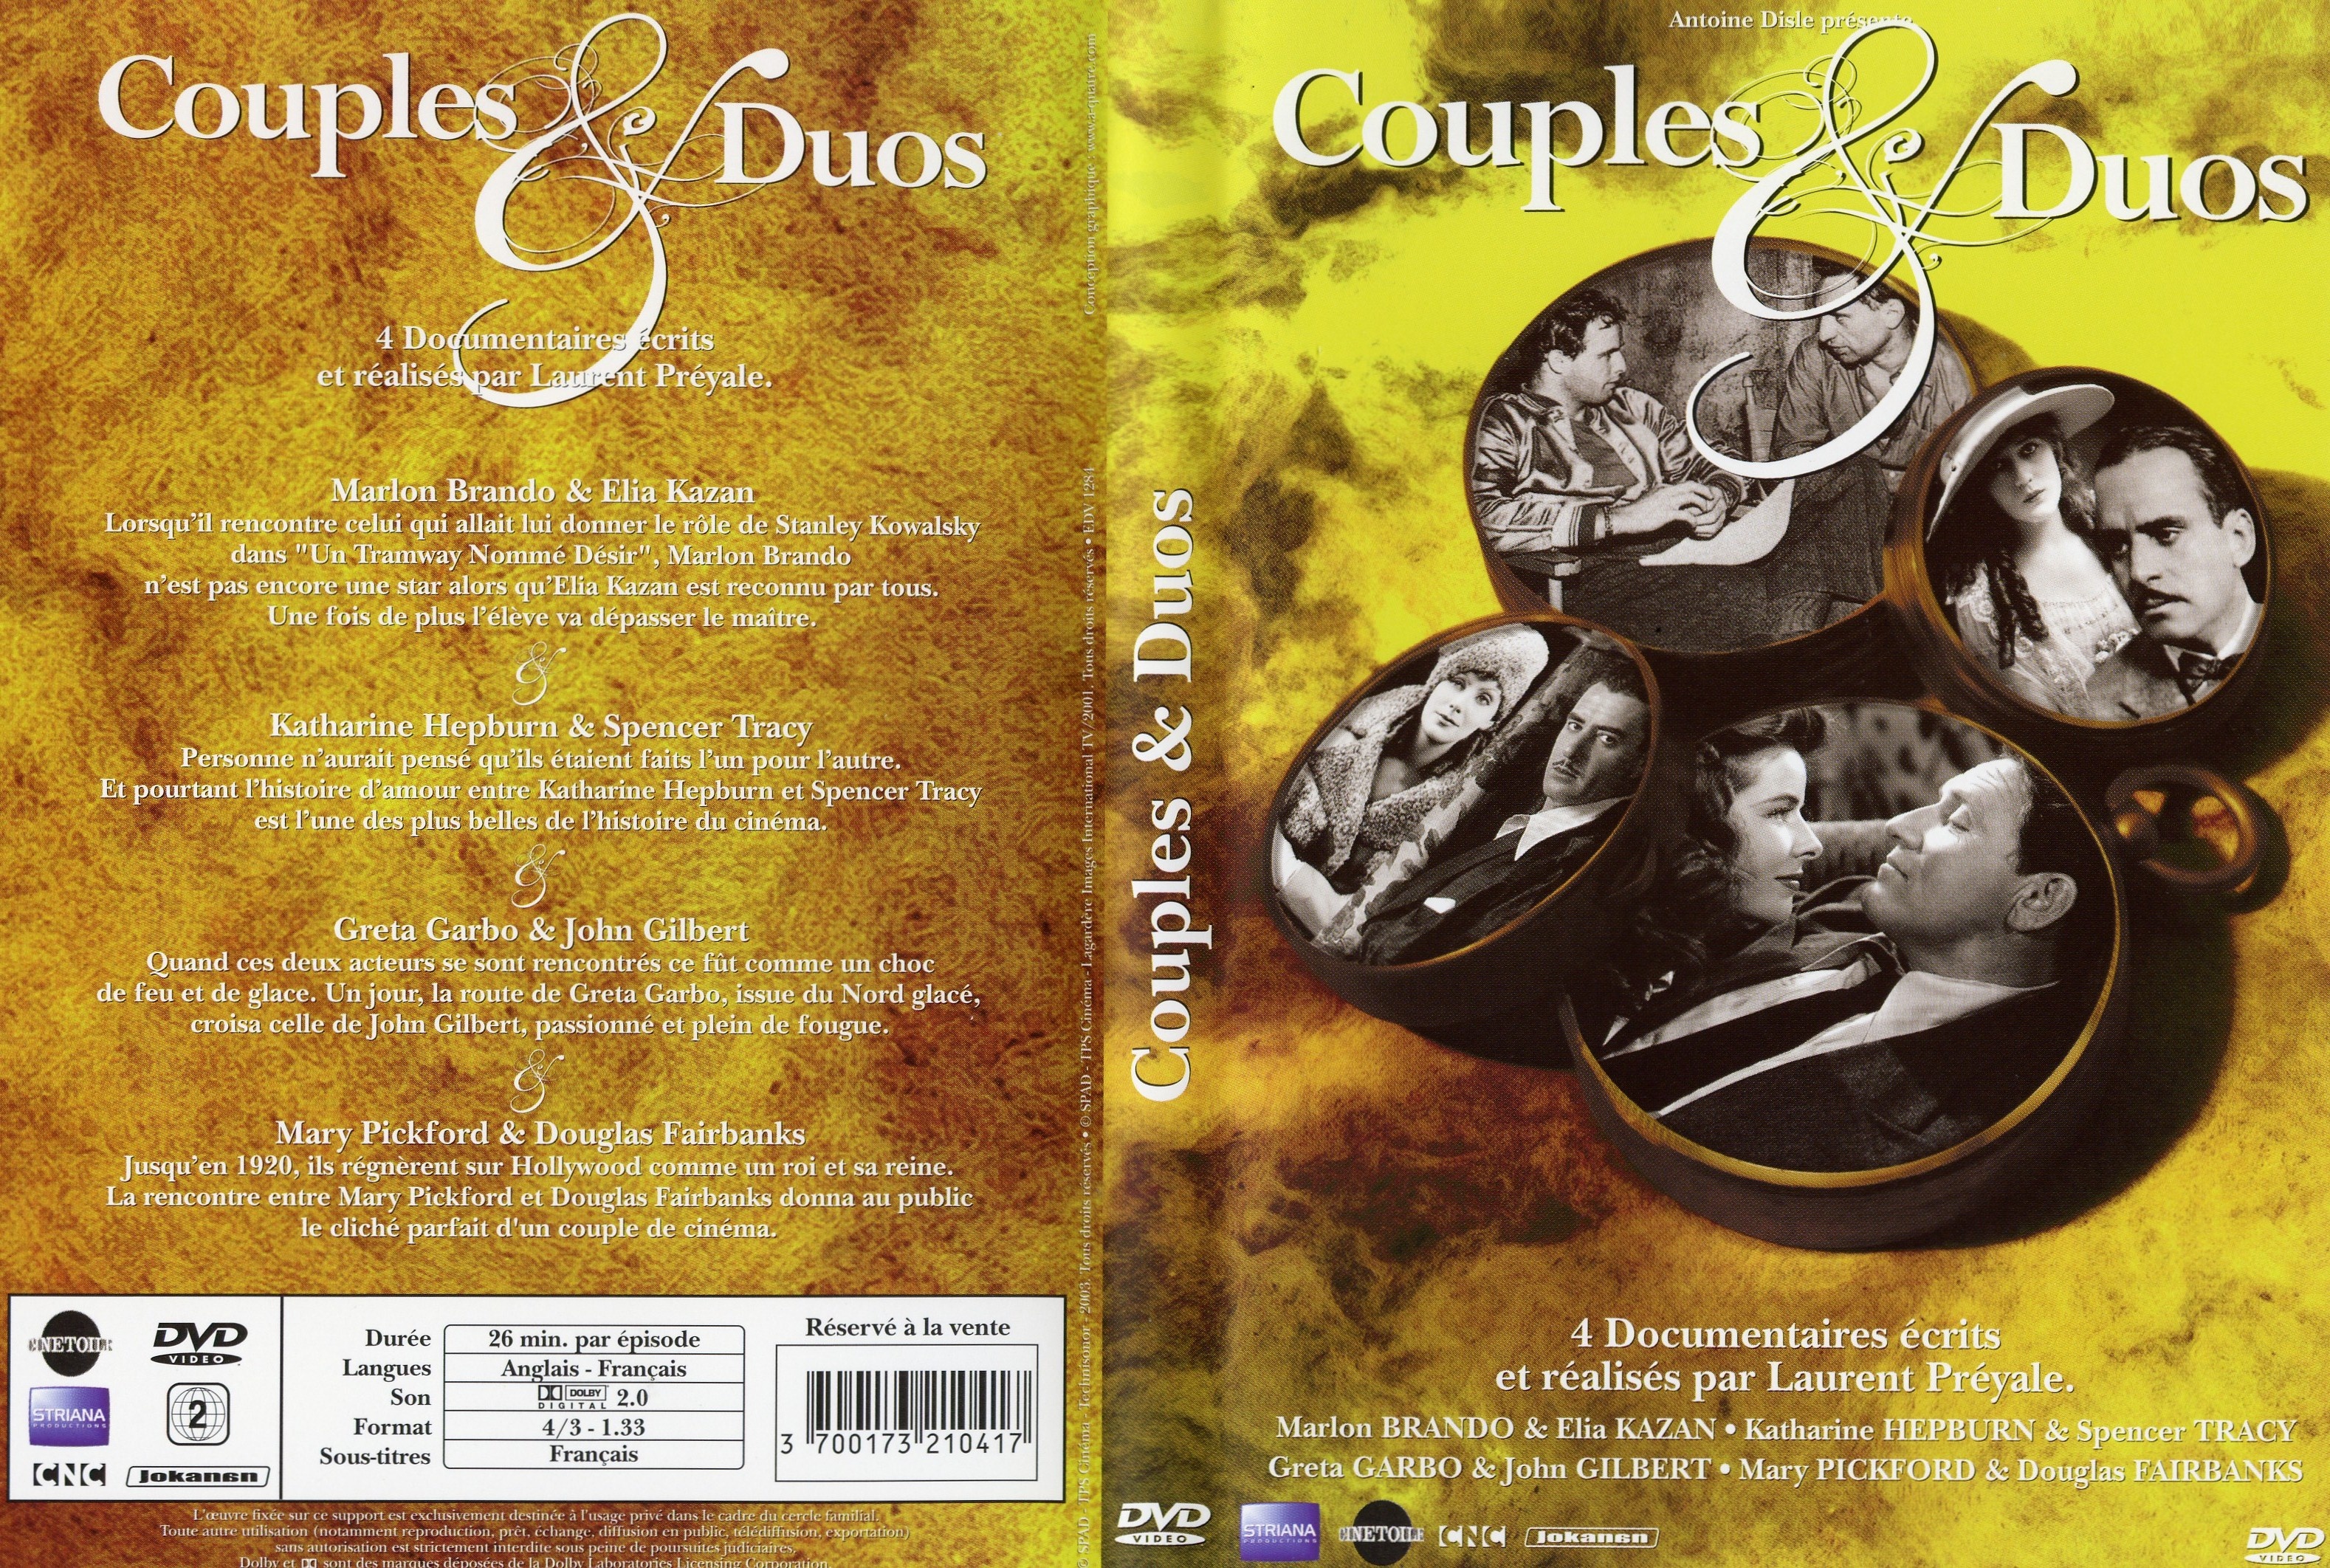 Jaquette DVD Couples et duos DVD 09